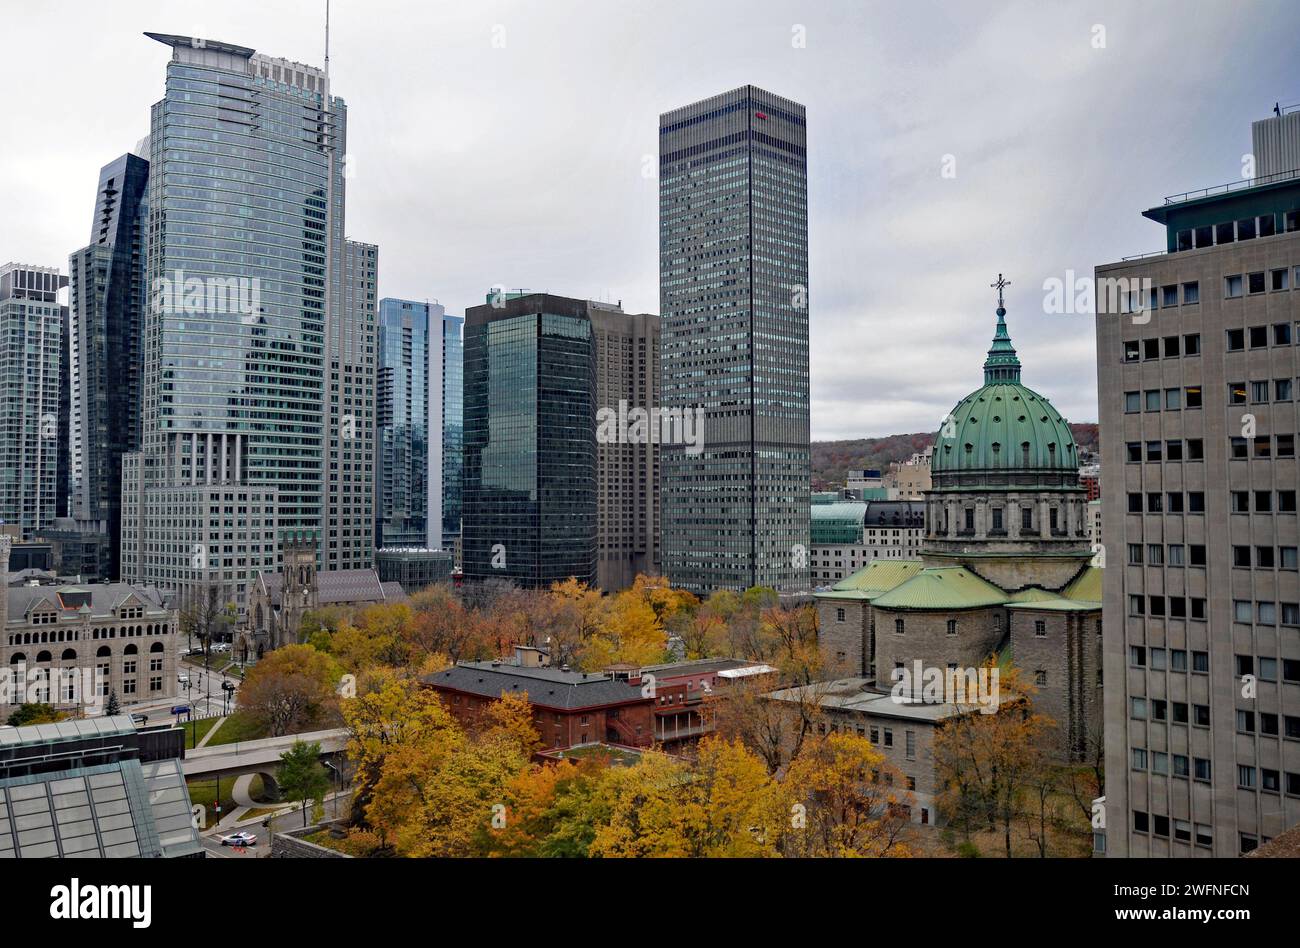 Des tours de bureaux modernes se dressent près de la cathédrale historique Mary, Reine du monde, en dôme, au centre-ville de Montréal. Banque D'Images